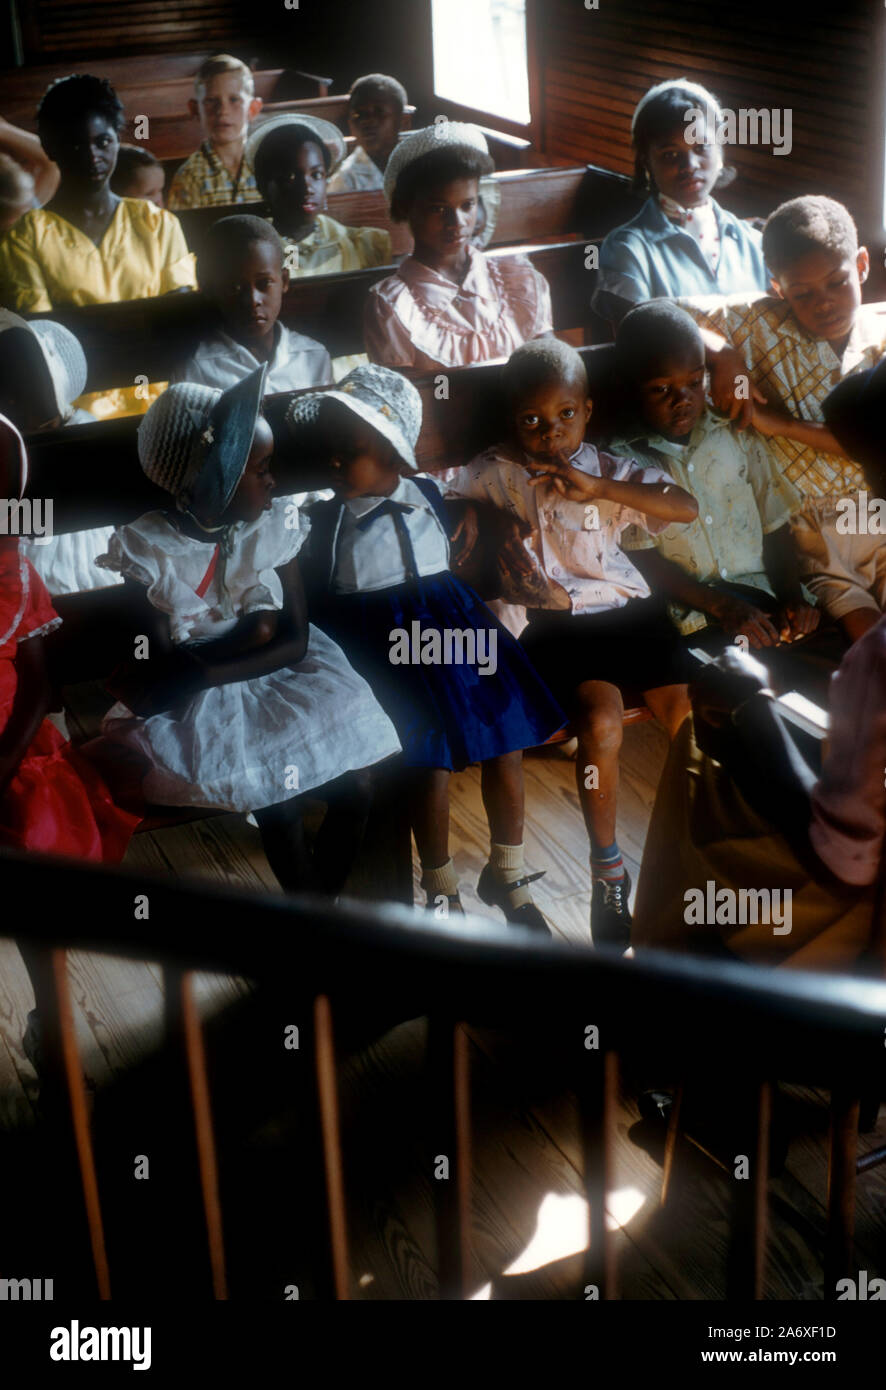 GREEN Turtle Cay, Abaco, BAHAMAS - 28 avril : Les enfants s'asseoir dans une église le 28 avril 1956 à Green Turtle Cay, Abaco, Bahamas. (Photo de Hy Peskin) (Définition du nombre : X3731) Banque D'Images